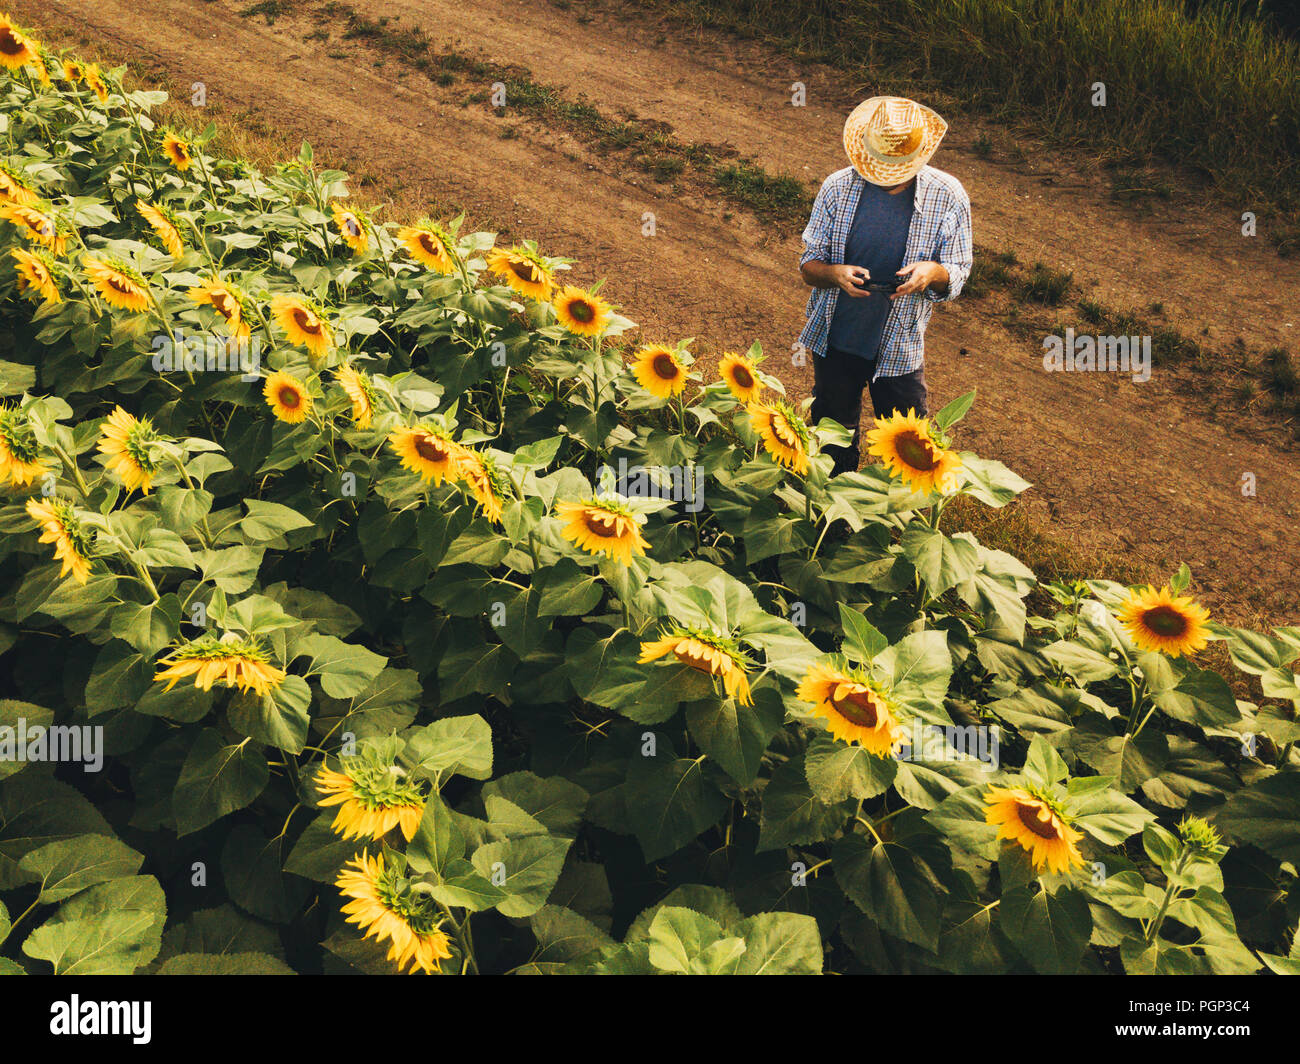 Landwirt Agronom mit Drohne zu prüfen, blühenden Sonnenblumen Pflanzen in Feld von oben, den Einsatz moderner Technologien in der Landwirtschaft und Lebensmittelproduktion i Stockfoto